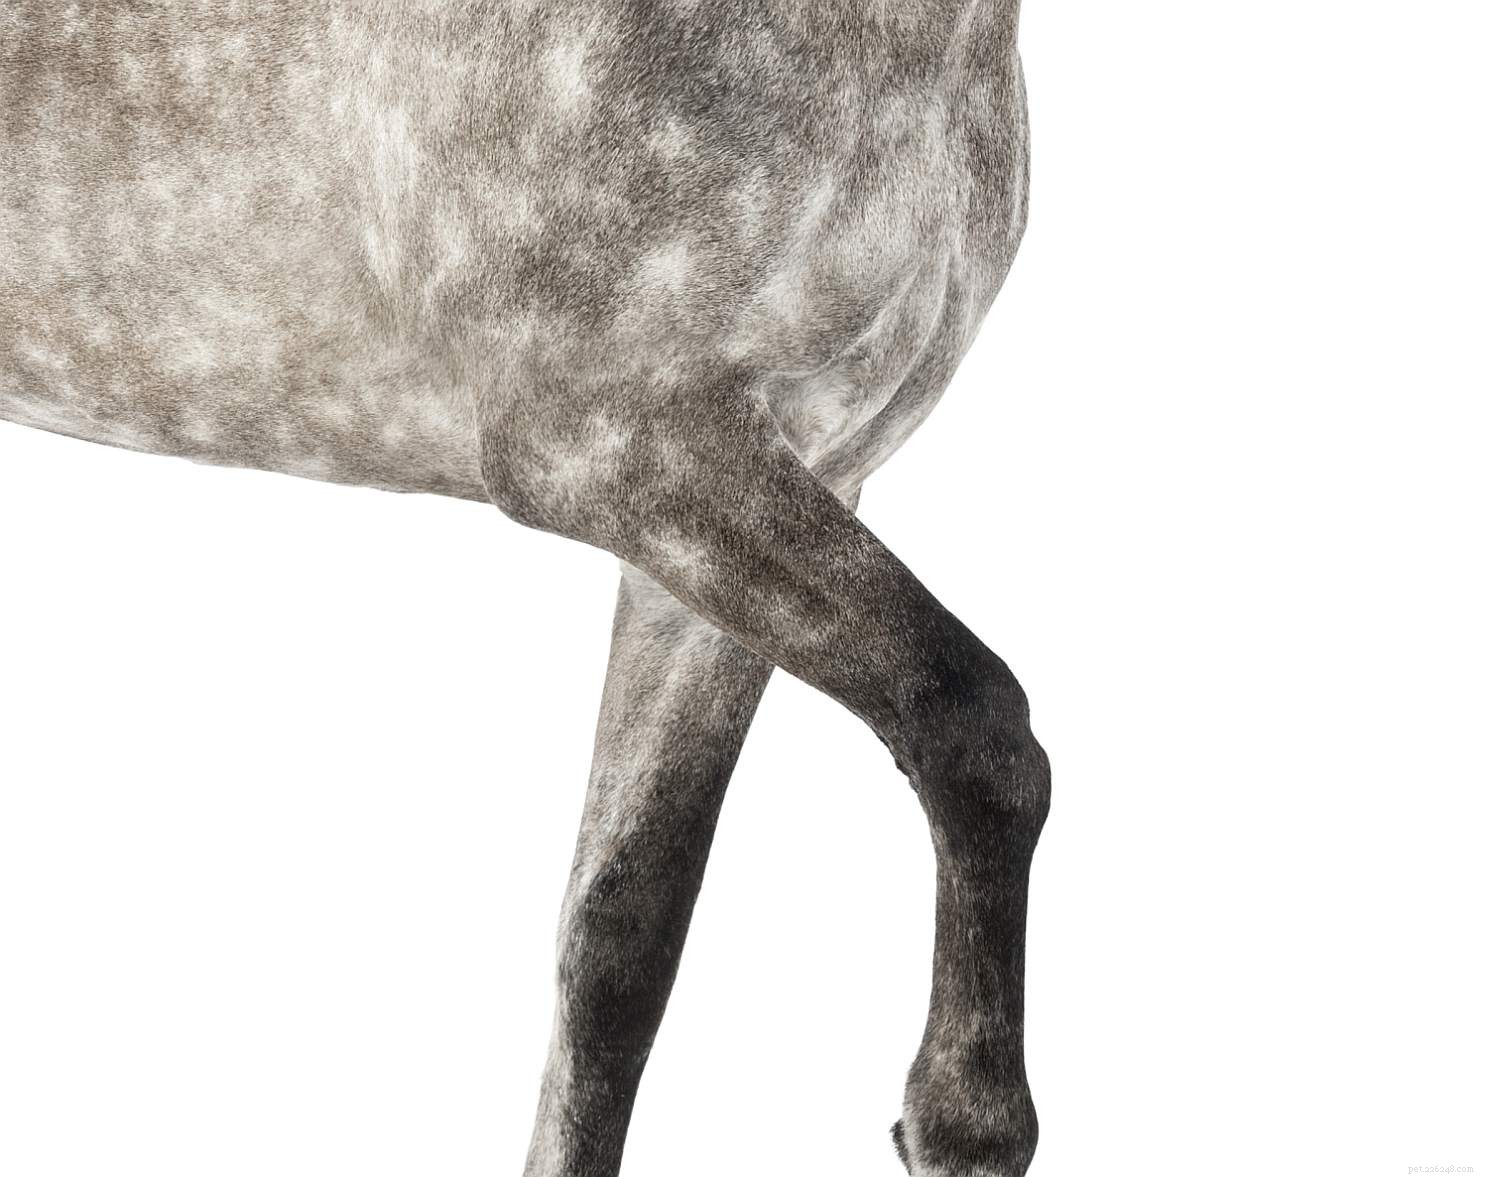 Um guia ilustrado das diferentes partes de um cavalo